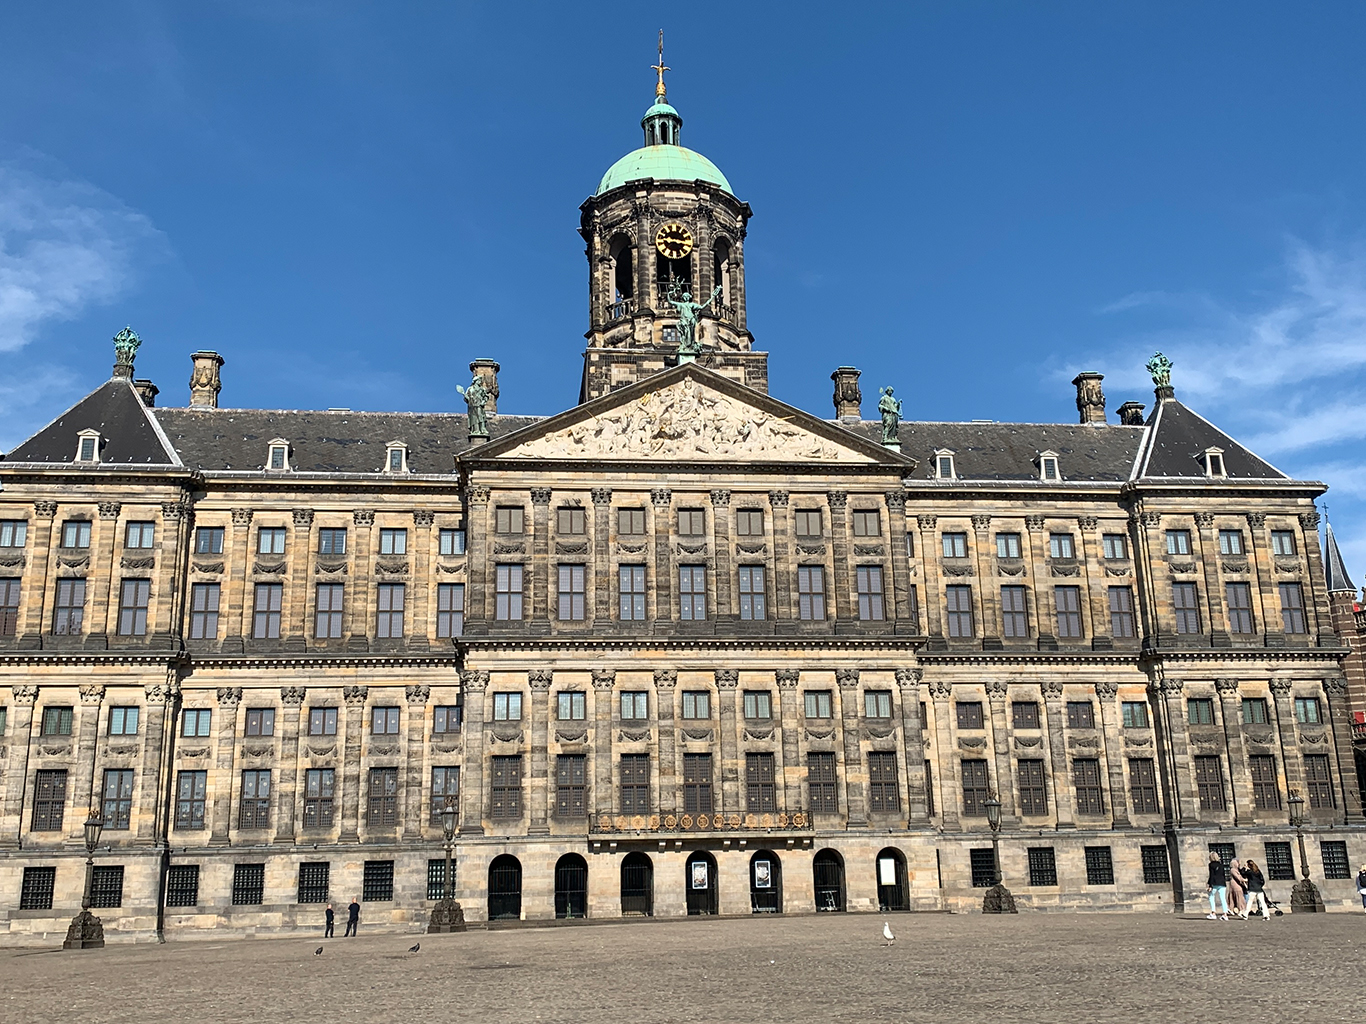 Královský palác (Koninklijke Palais) stojí na slavném náměstí Dam